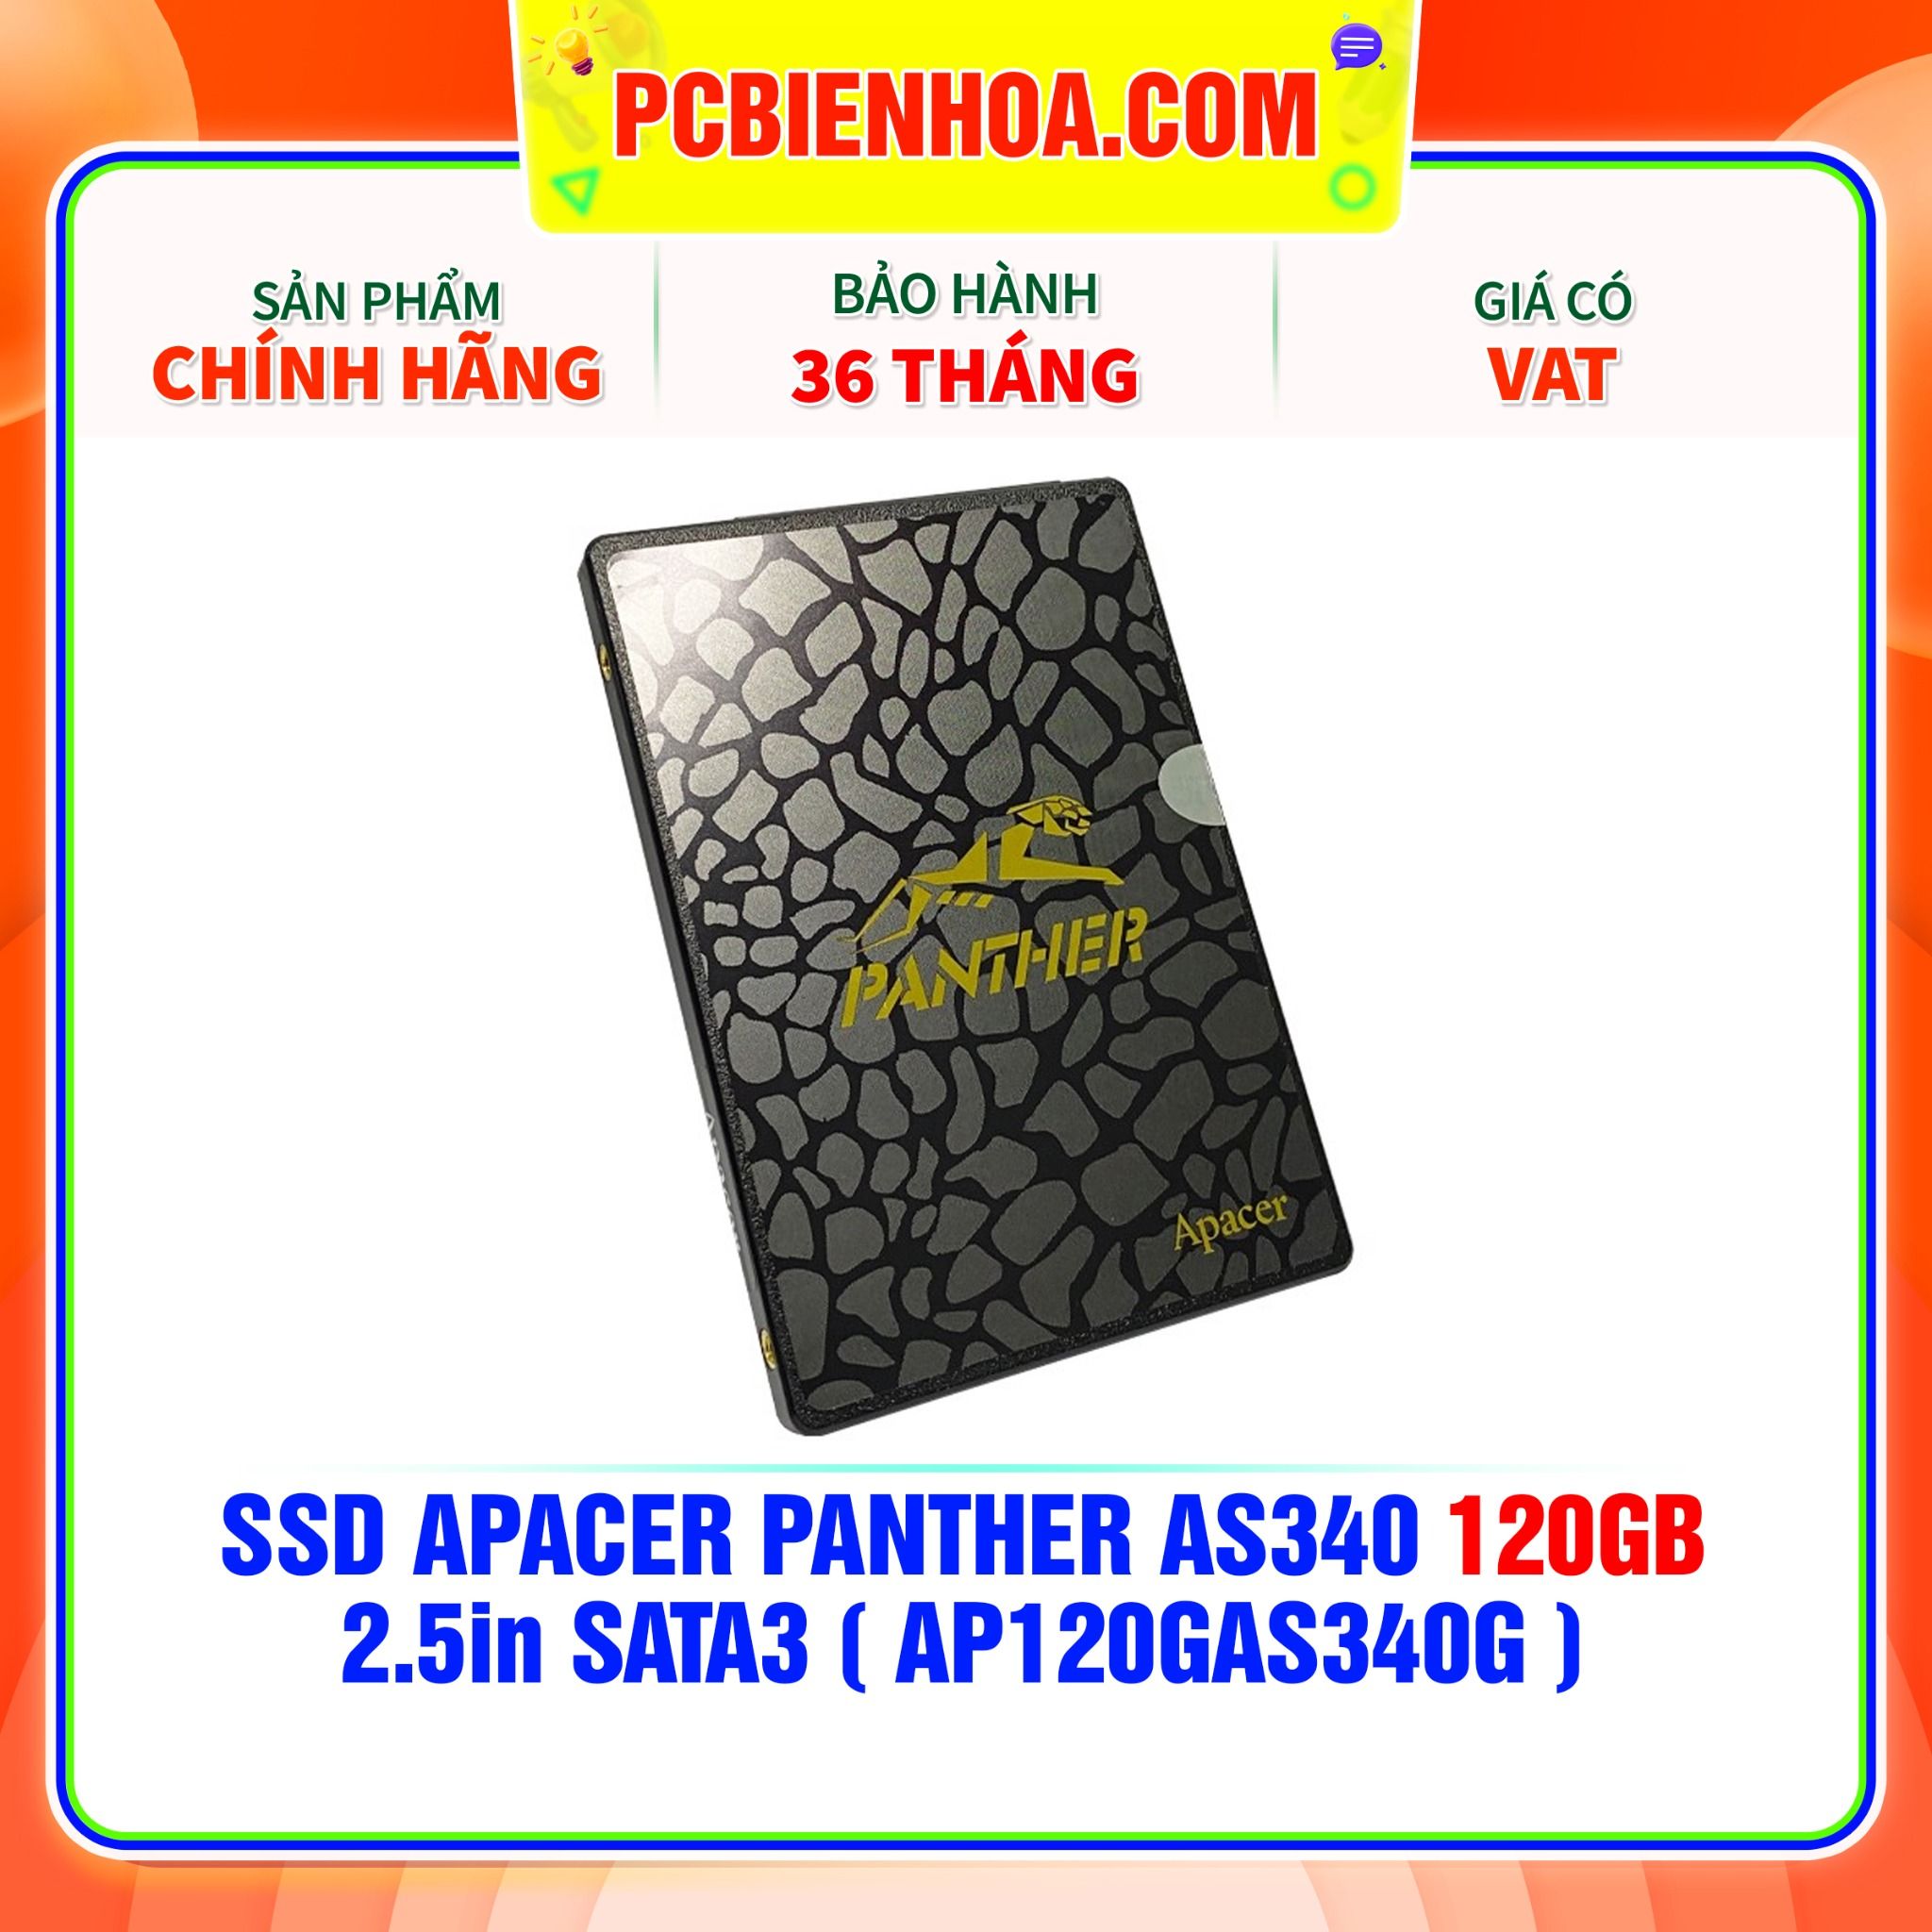  SSD APACER PANTHER AS340 120GB - 2.5in SATA3 ( AP120GAS340G ) 